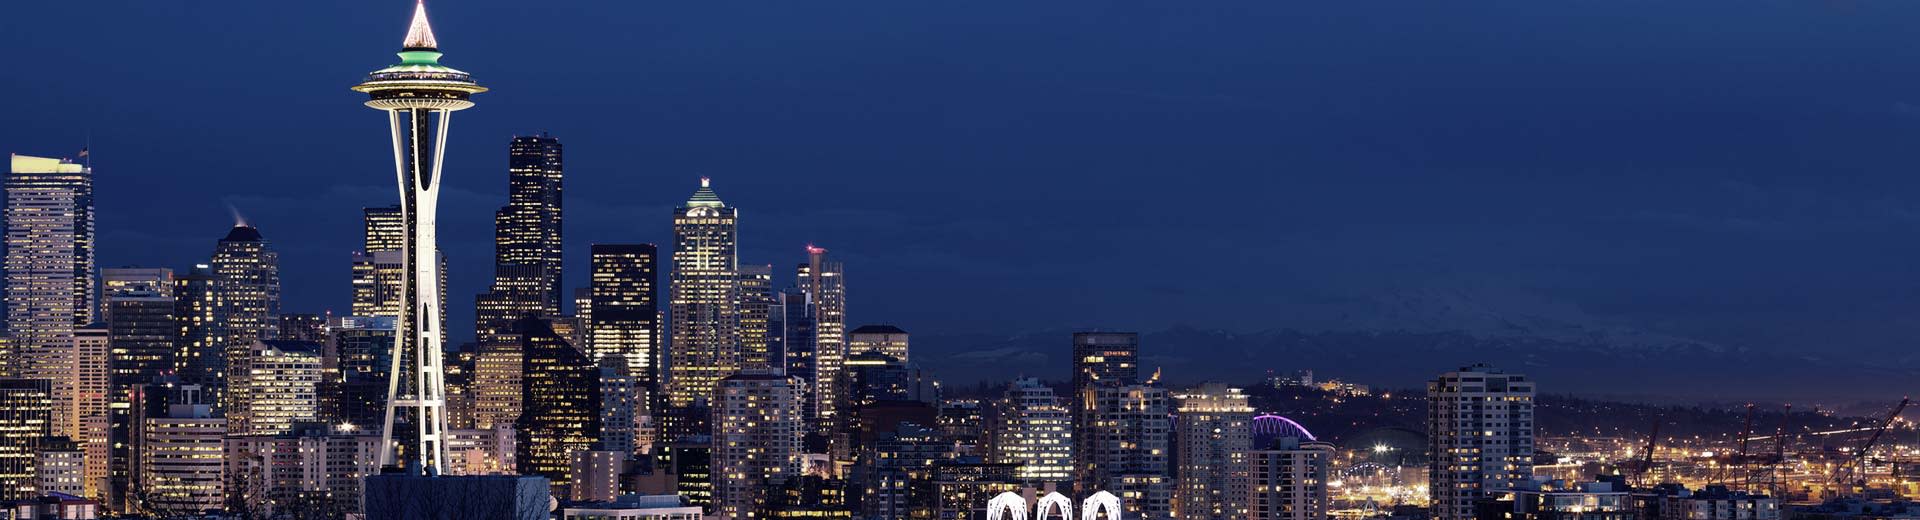 La famosa aguja espacial de Seattle se acerca al Nightsky, rodeada de rascacielos y edificios de apartamentos.